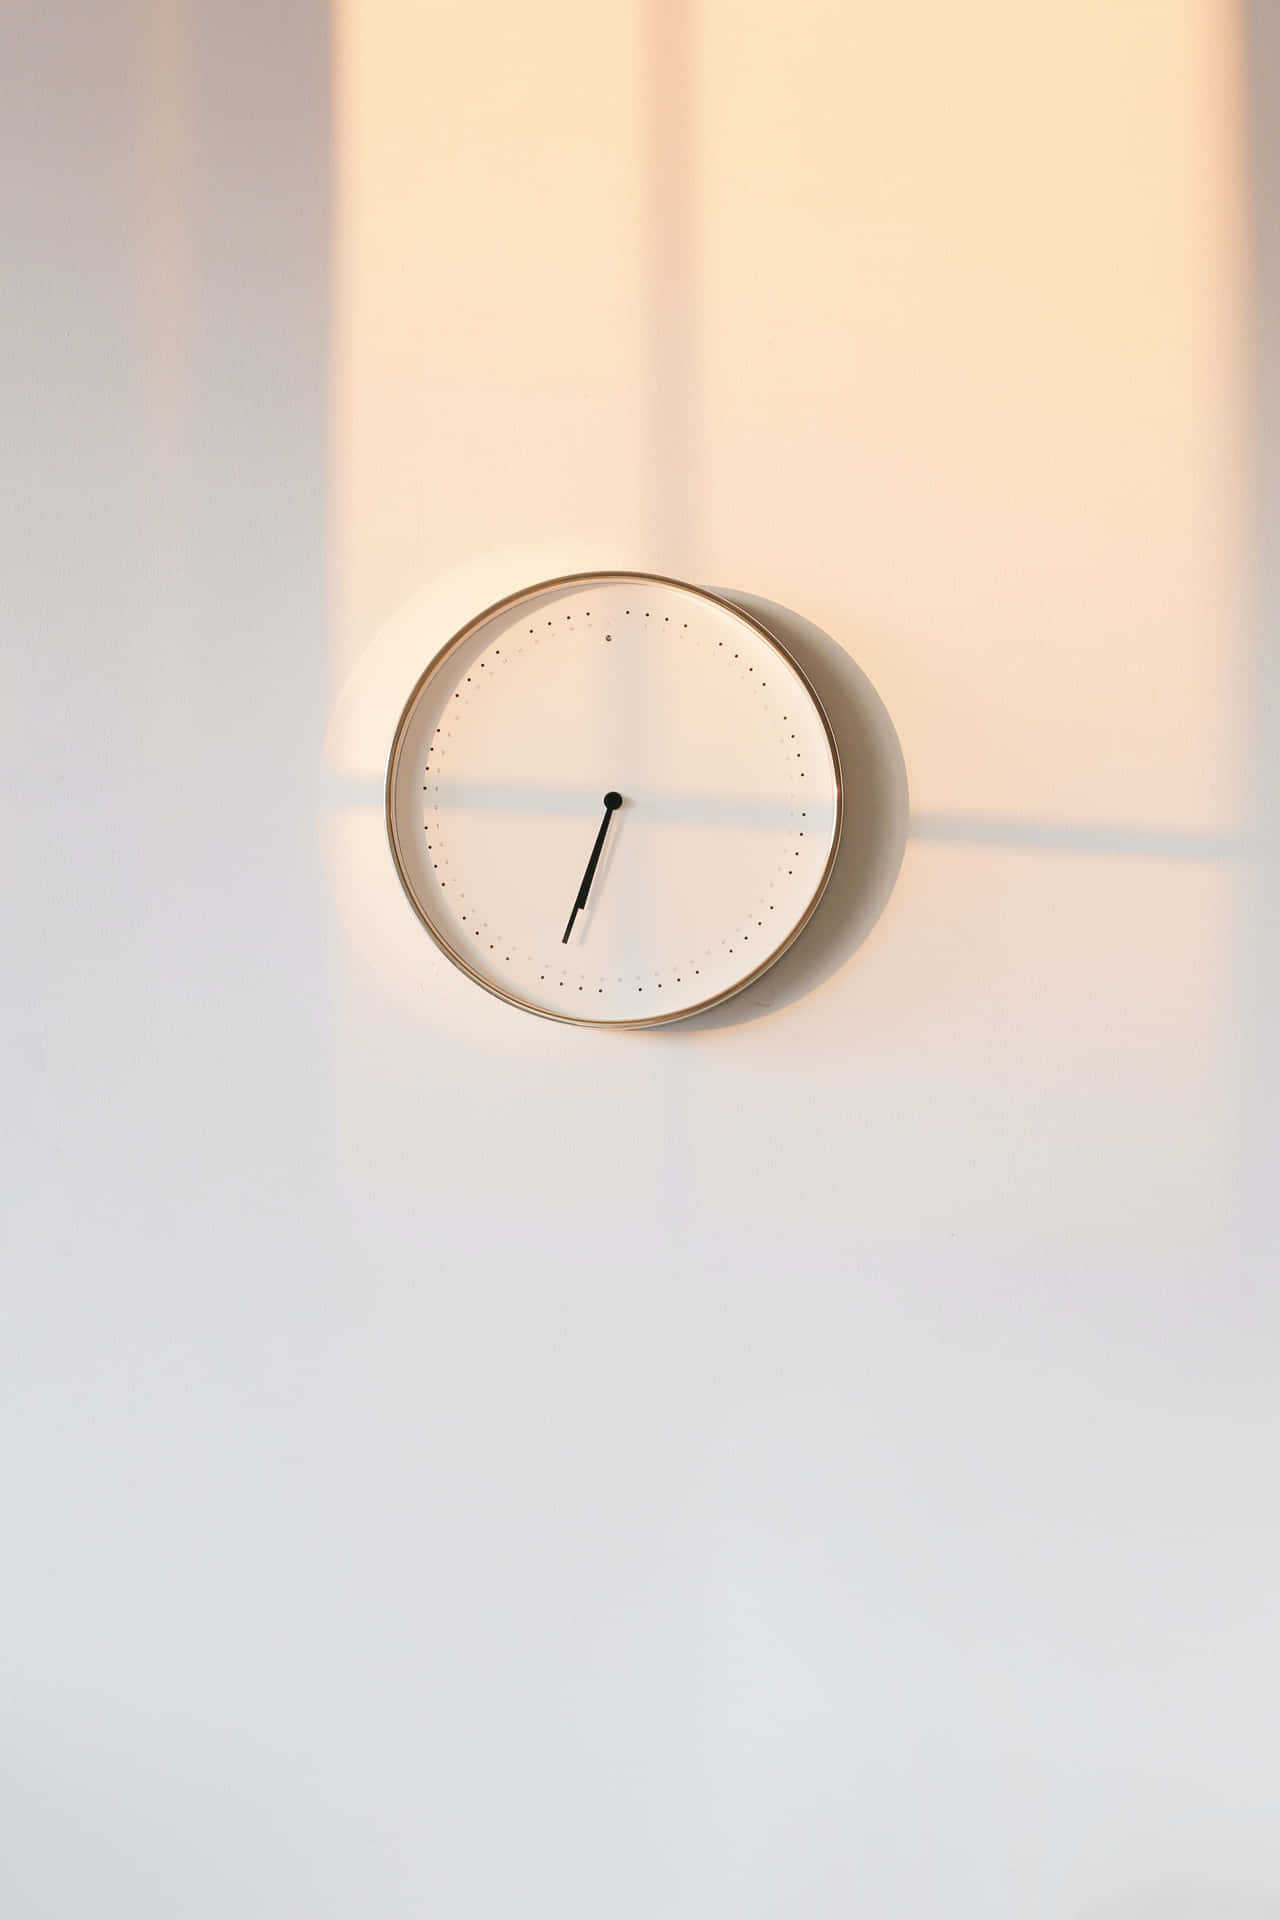 Simple Minimalist Wall Clock Wallpaper